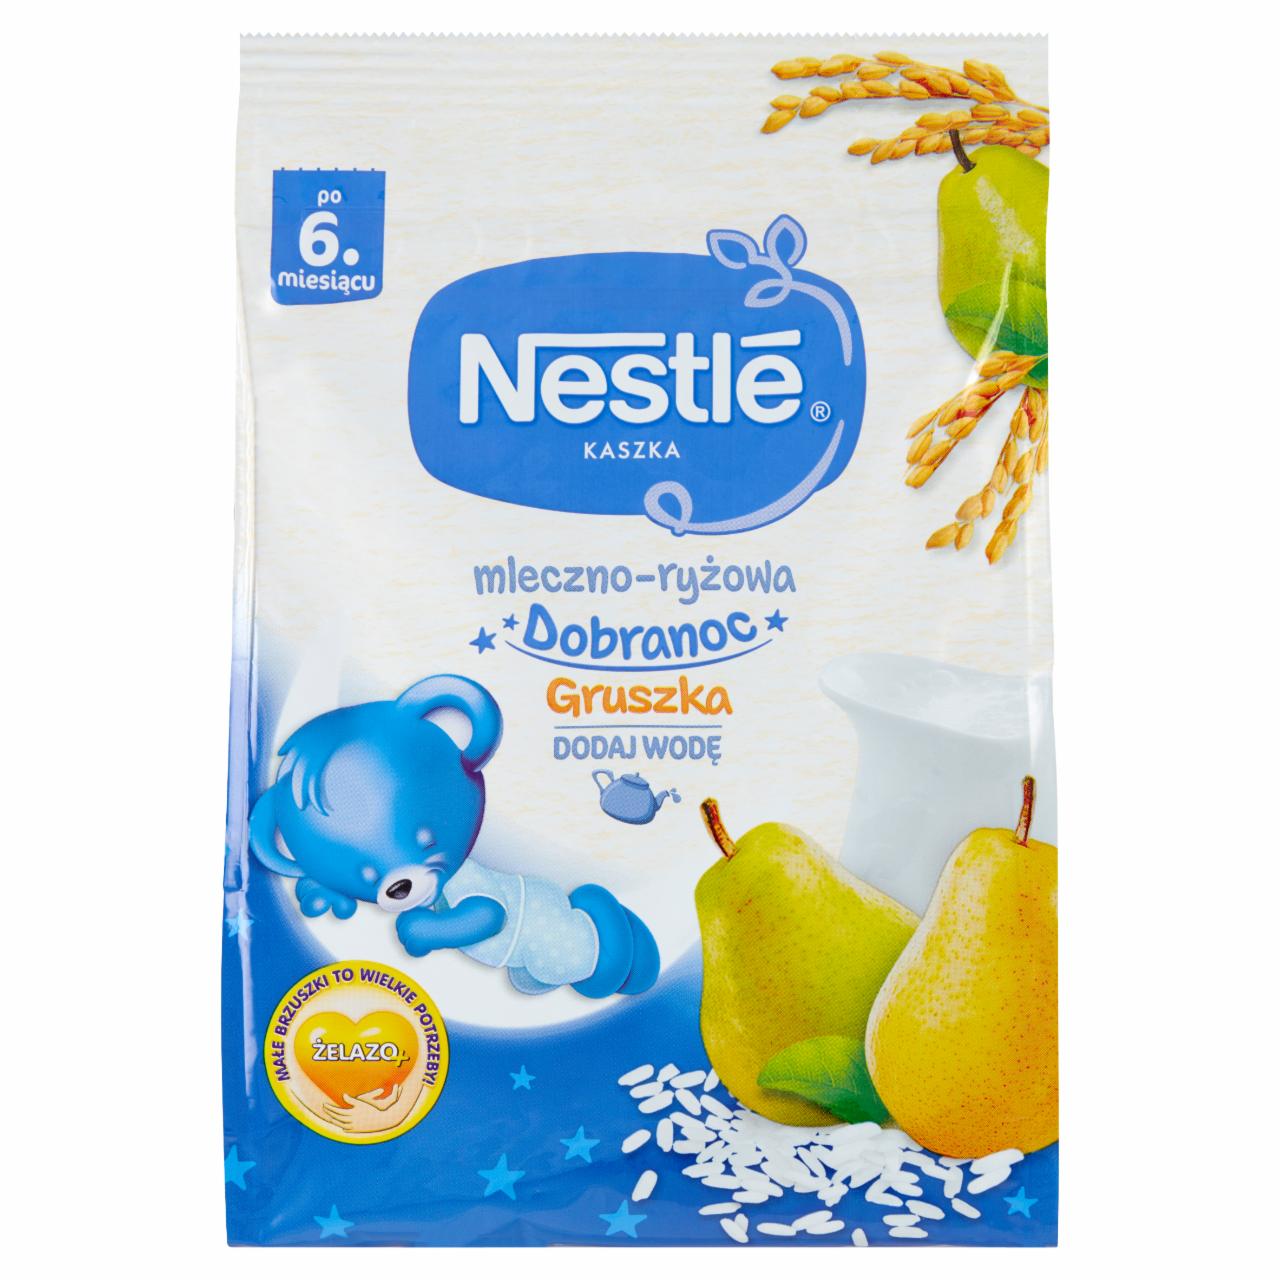 Zdjęcia - Nestlé Kaszka dobranoc mleczno-ryżowa gruszka dla niemowląt po 6. miesiącu 230 g